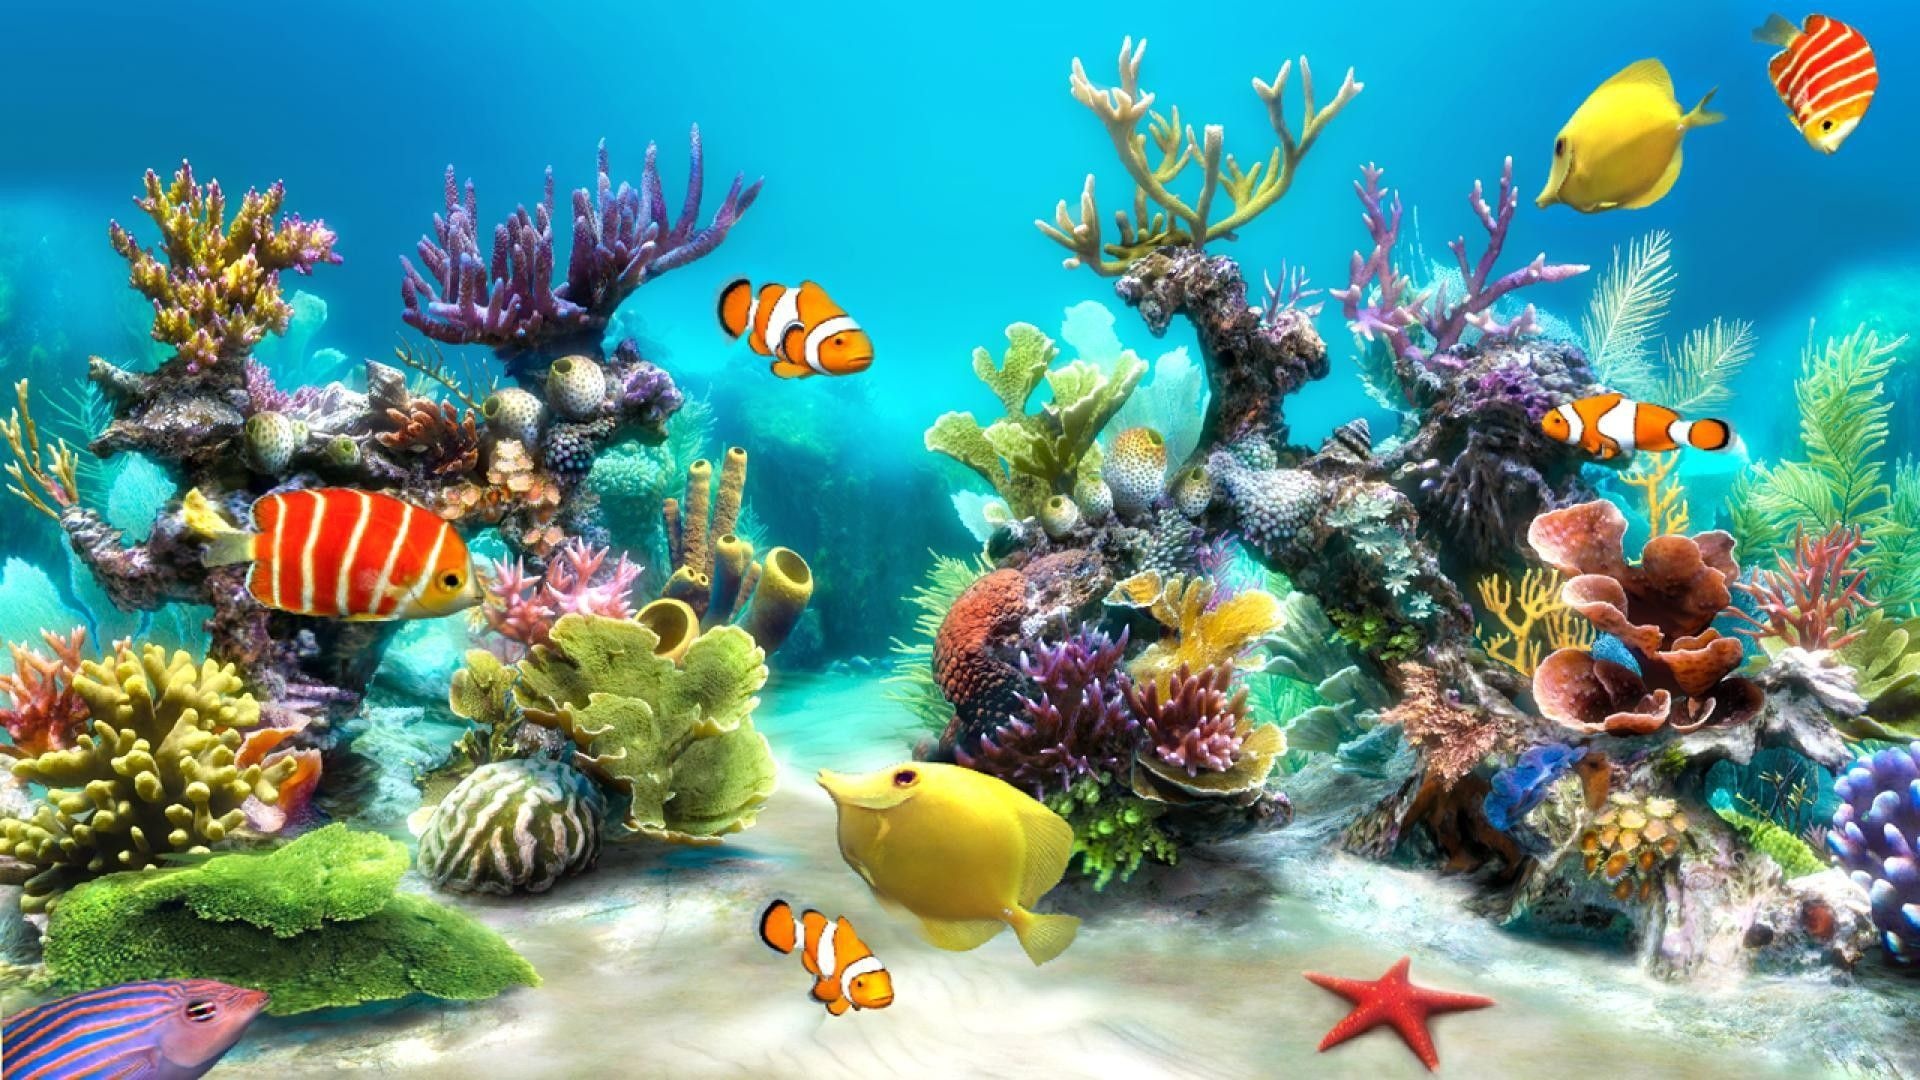 Aquarium, Marine life, Desktop backgrounds, Aquatic wonderland, Tranquil escape, 1920x1080 Full HD Desktop